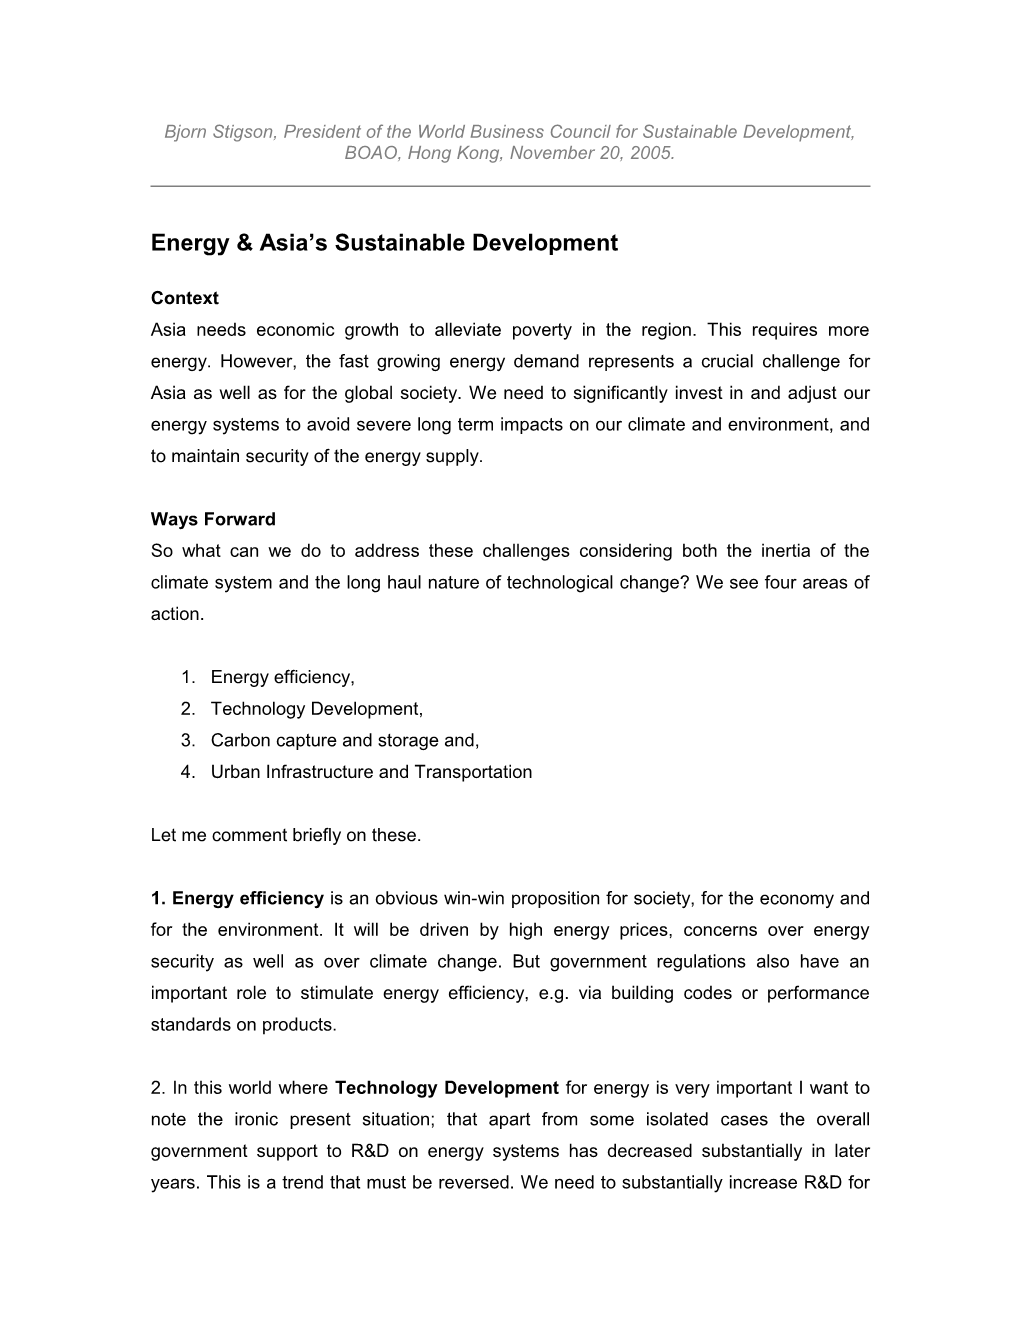 Energy & Asia S Sustainable Development